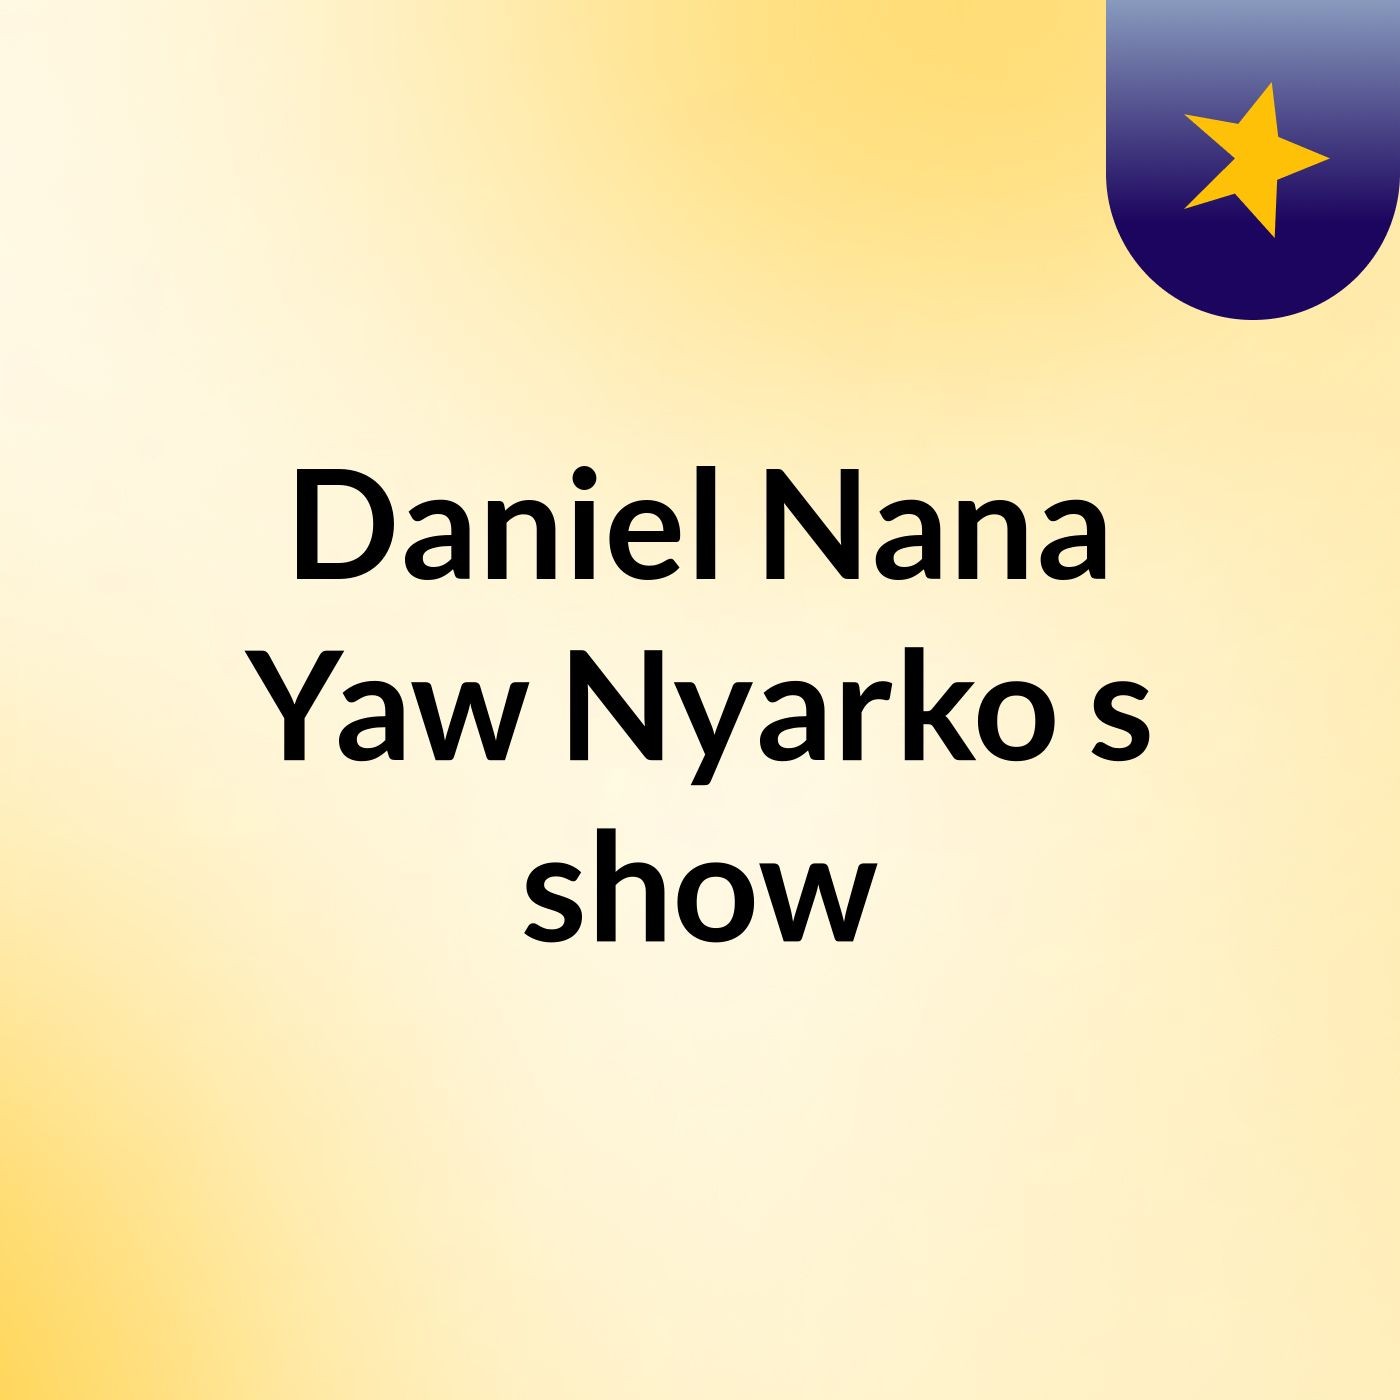 Daniel Nana Yaw Nyarko's show